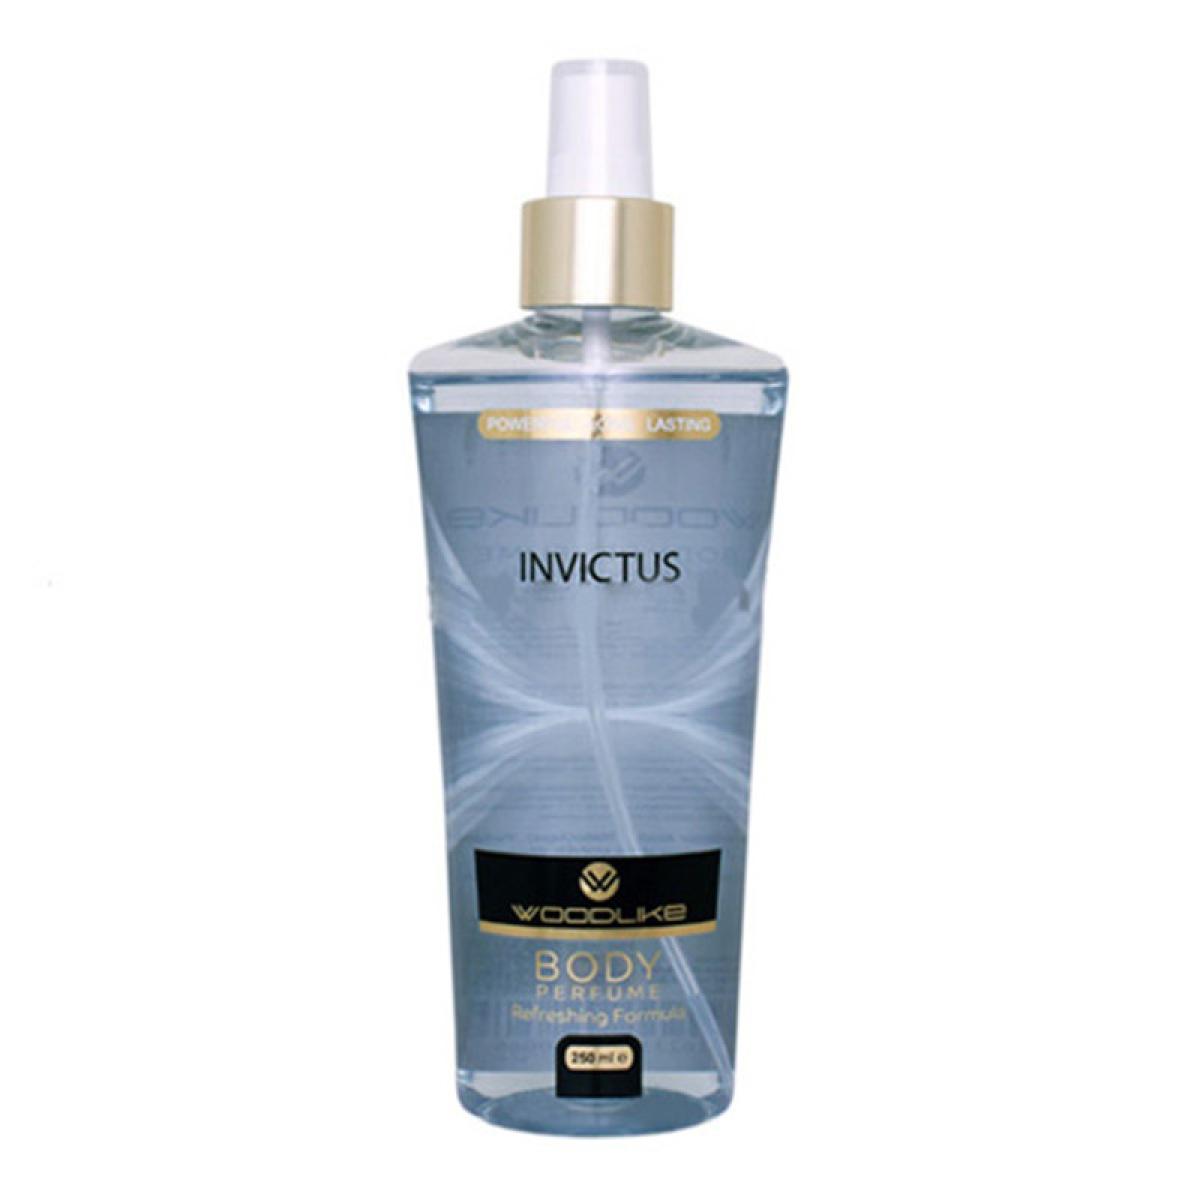 بادی اسپلش مردانه اینوکتوس - Body Perfume invictus